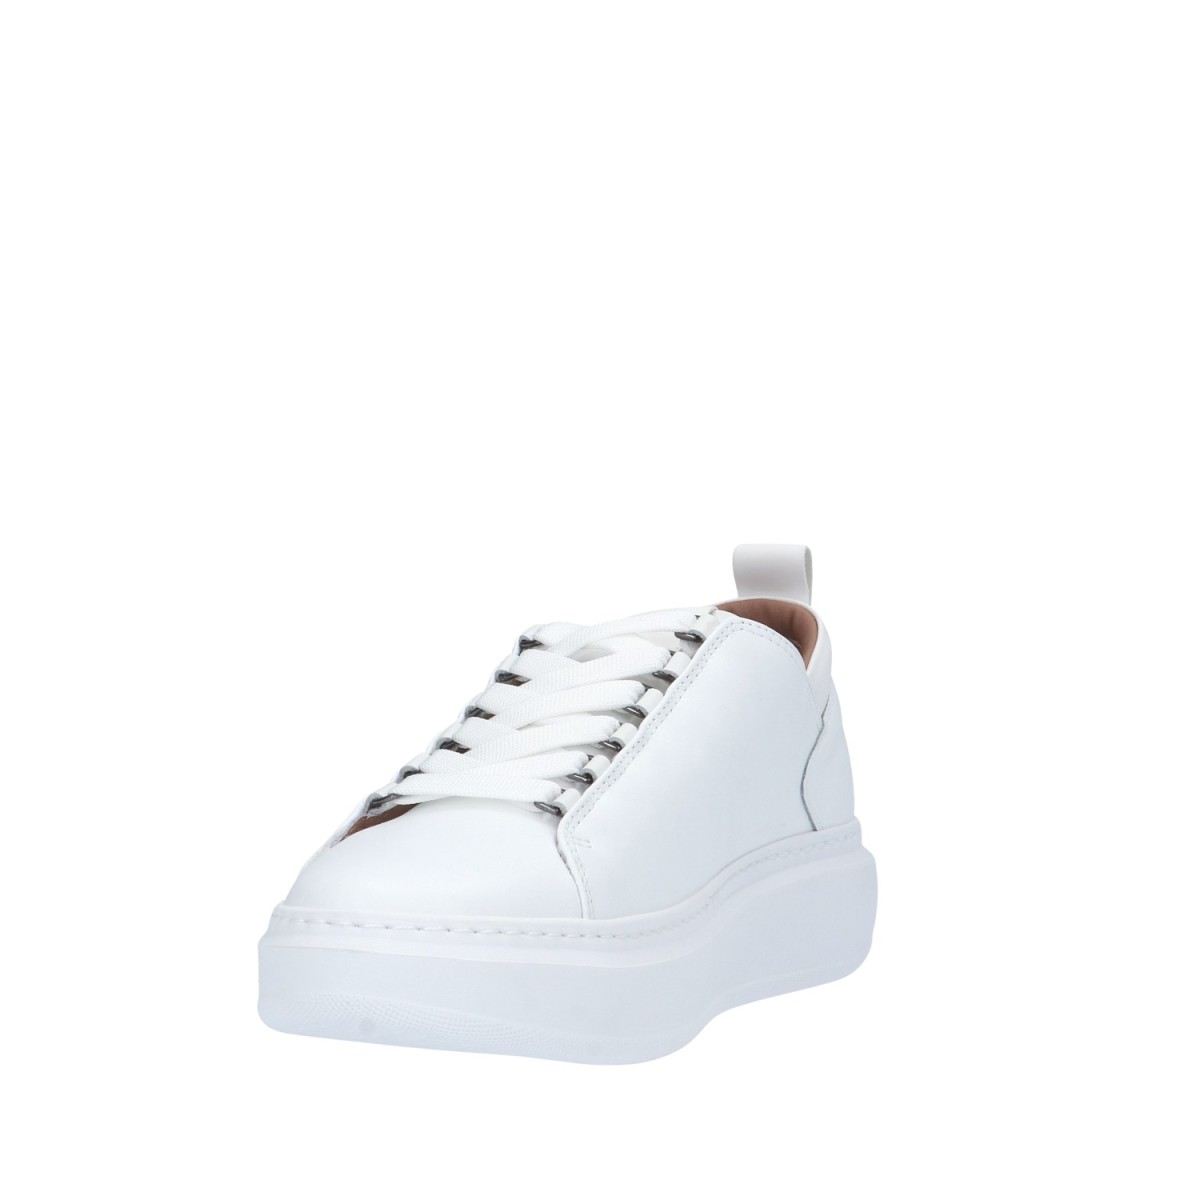 Alexander smith Sneaker Bianco Gomma WYM-2263-TWT